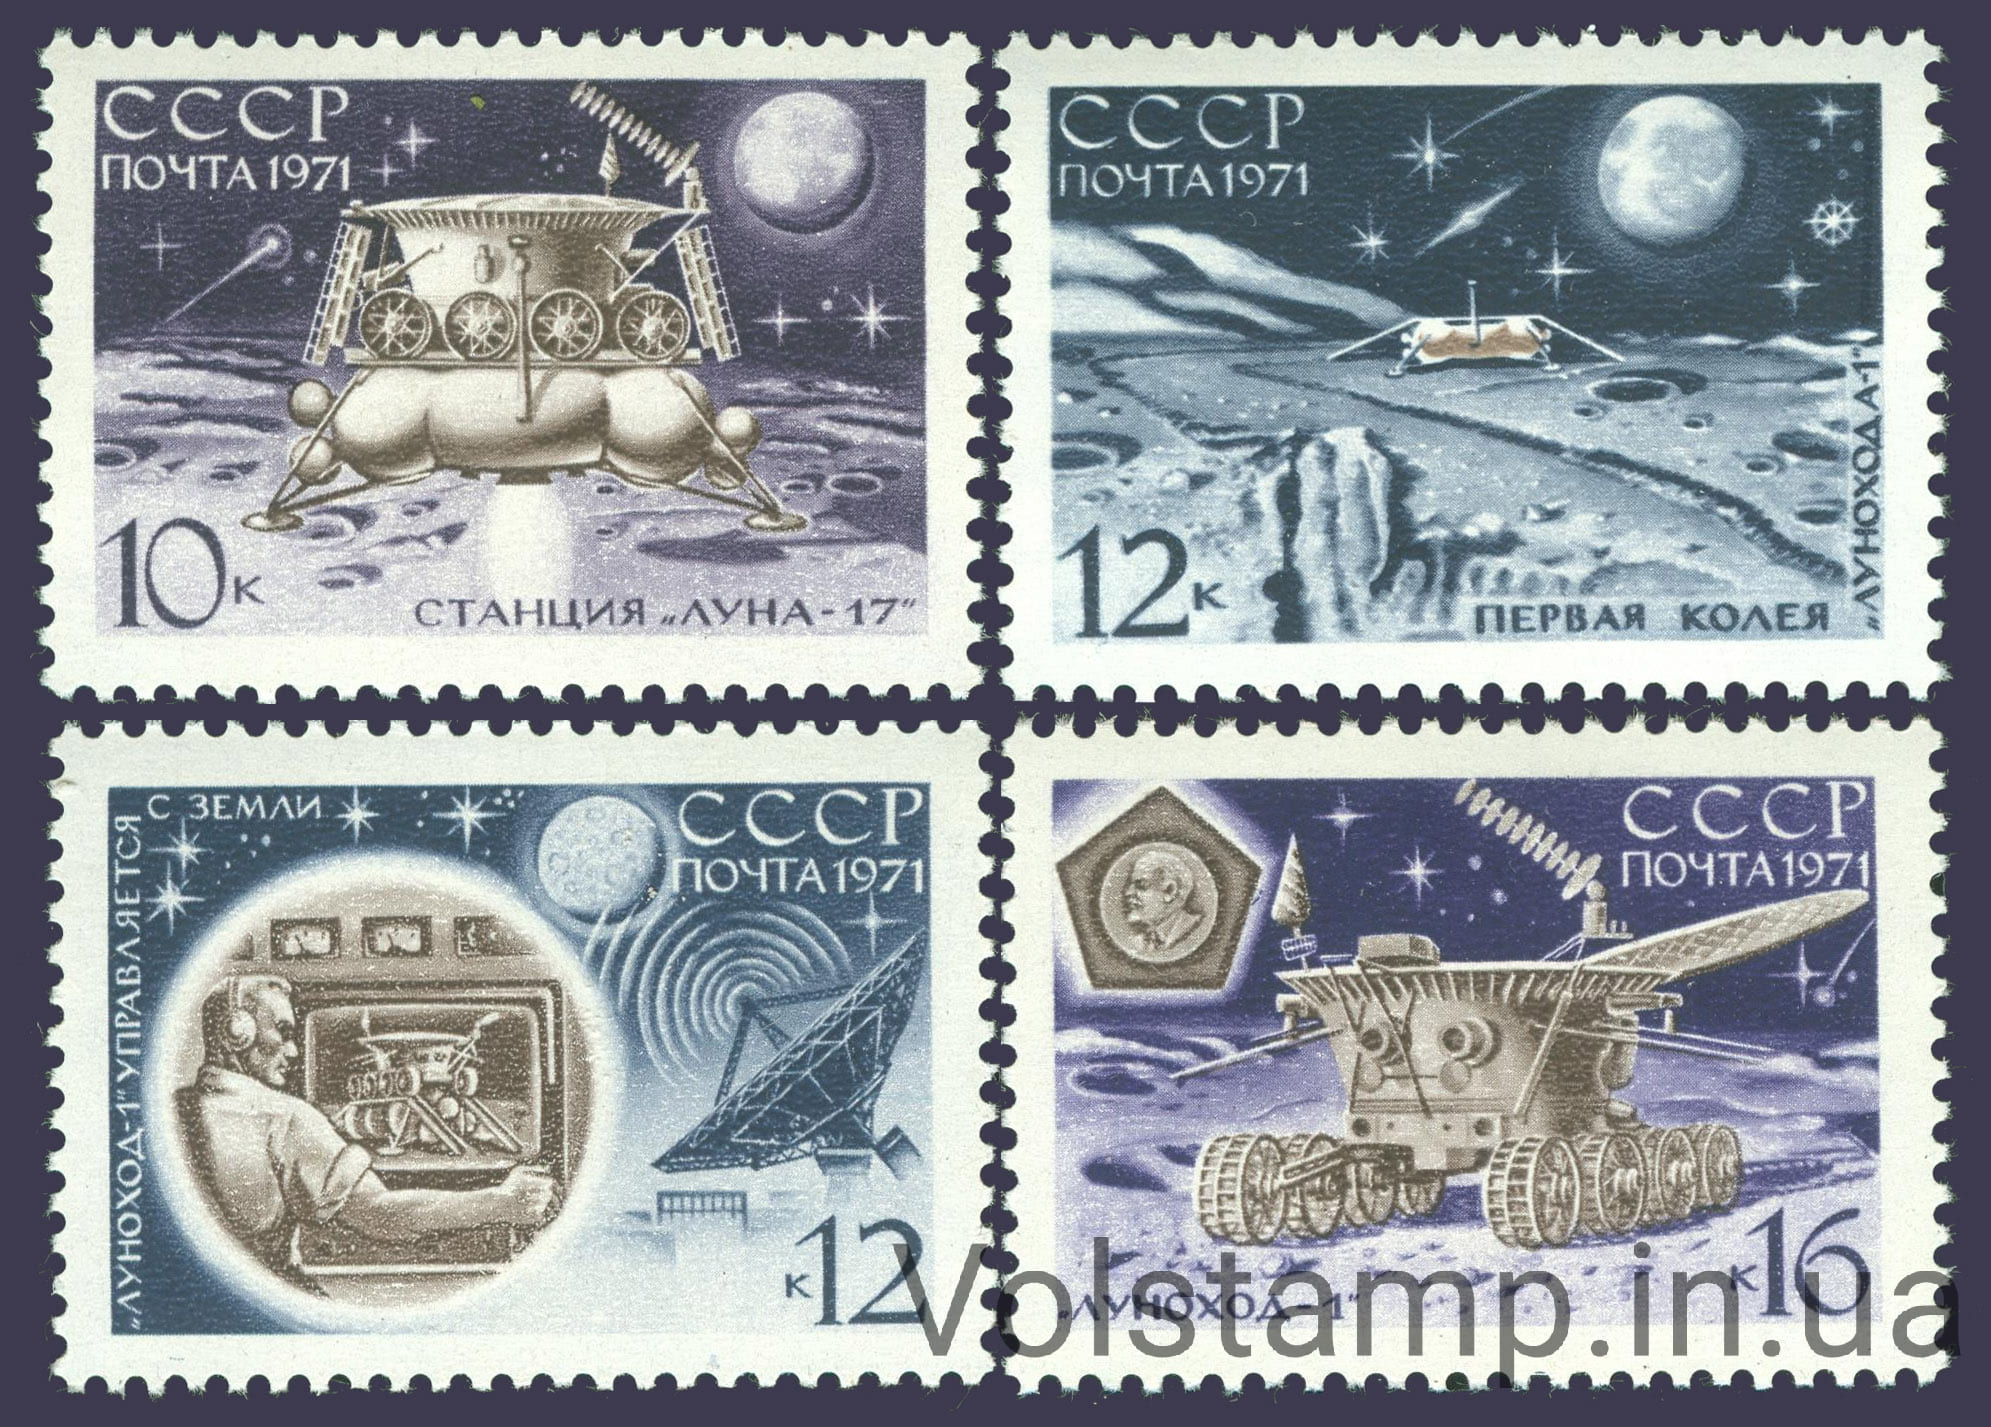 1971 серия марок Советская автоматическая станция Луна-17 №3906-3909